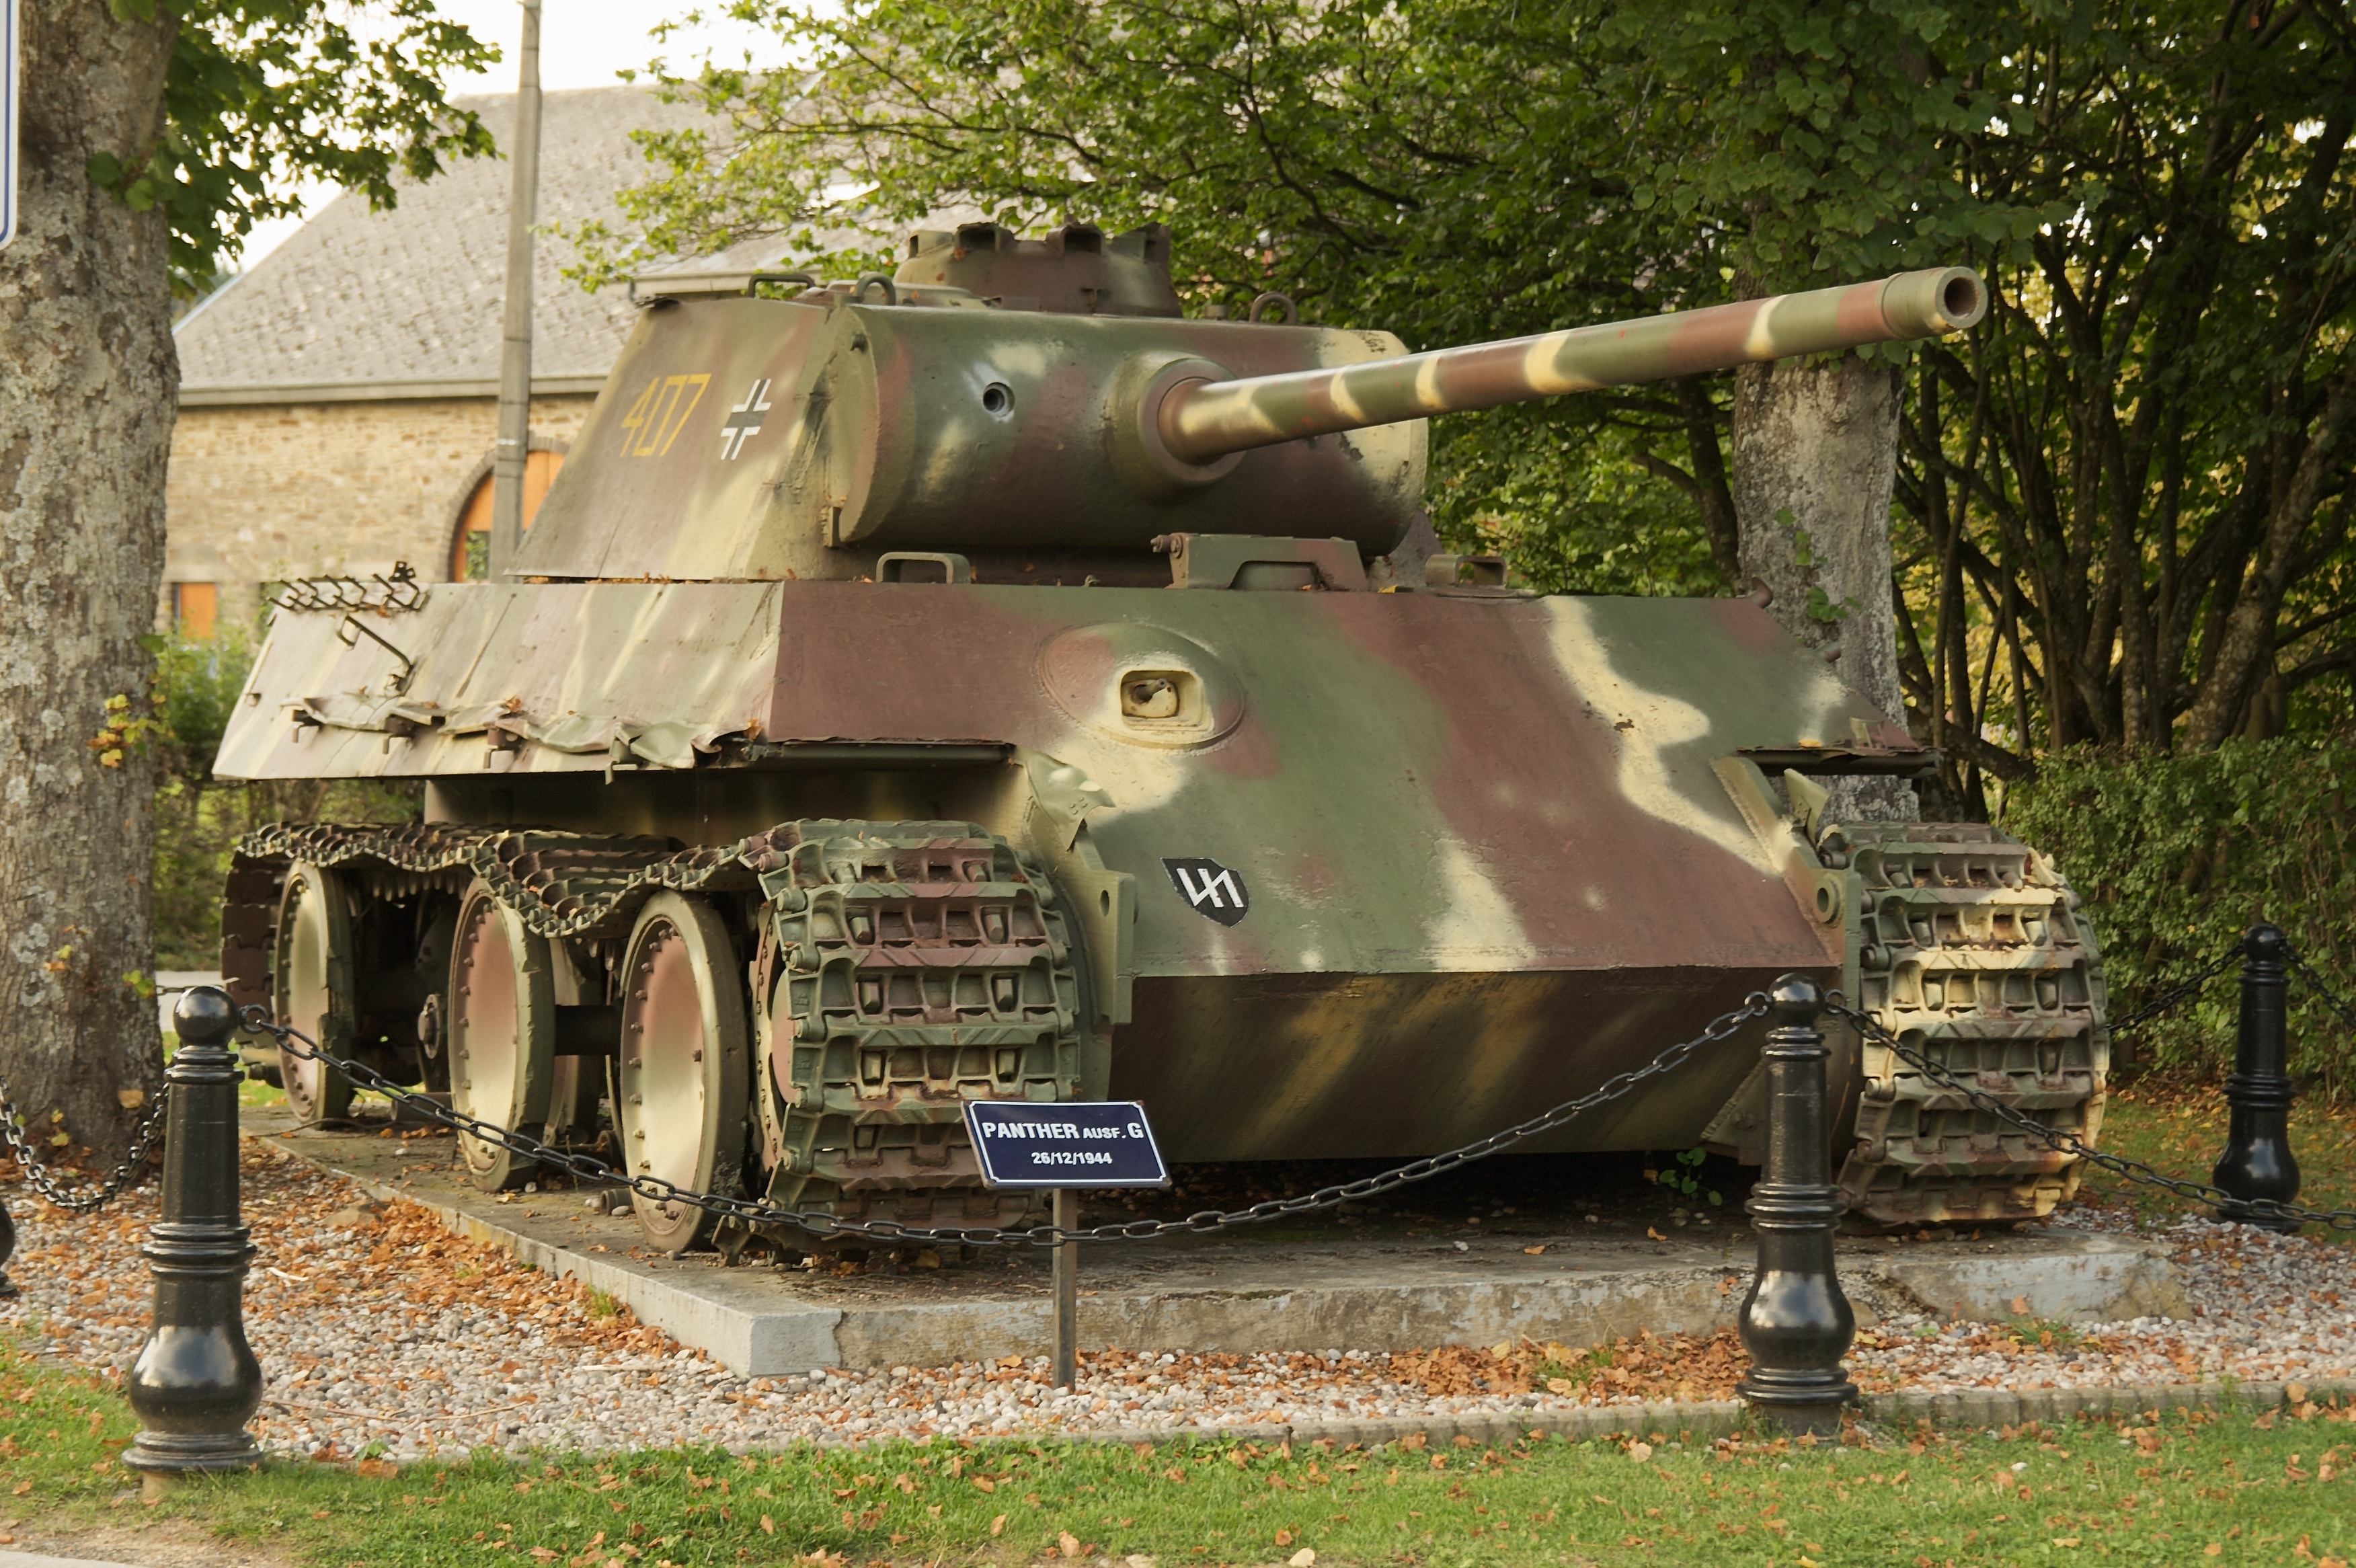 Пантера танк 2 мировой войны